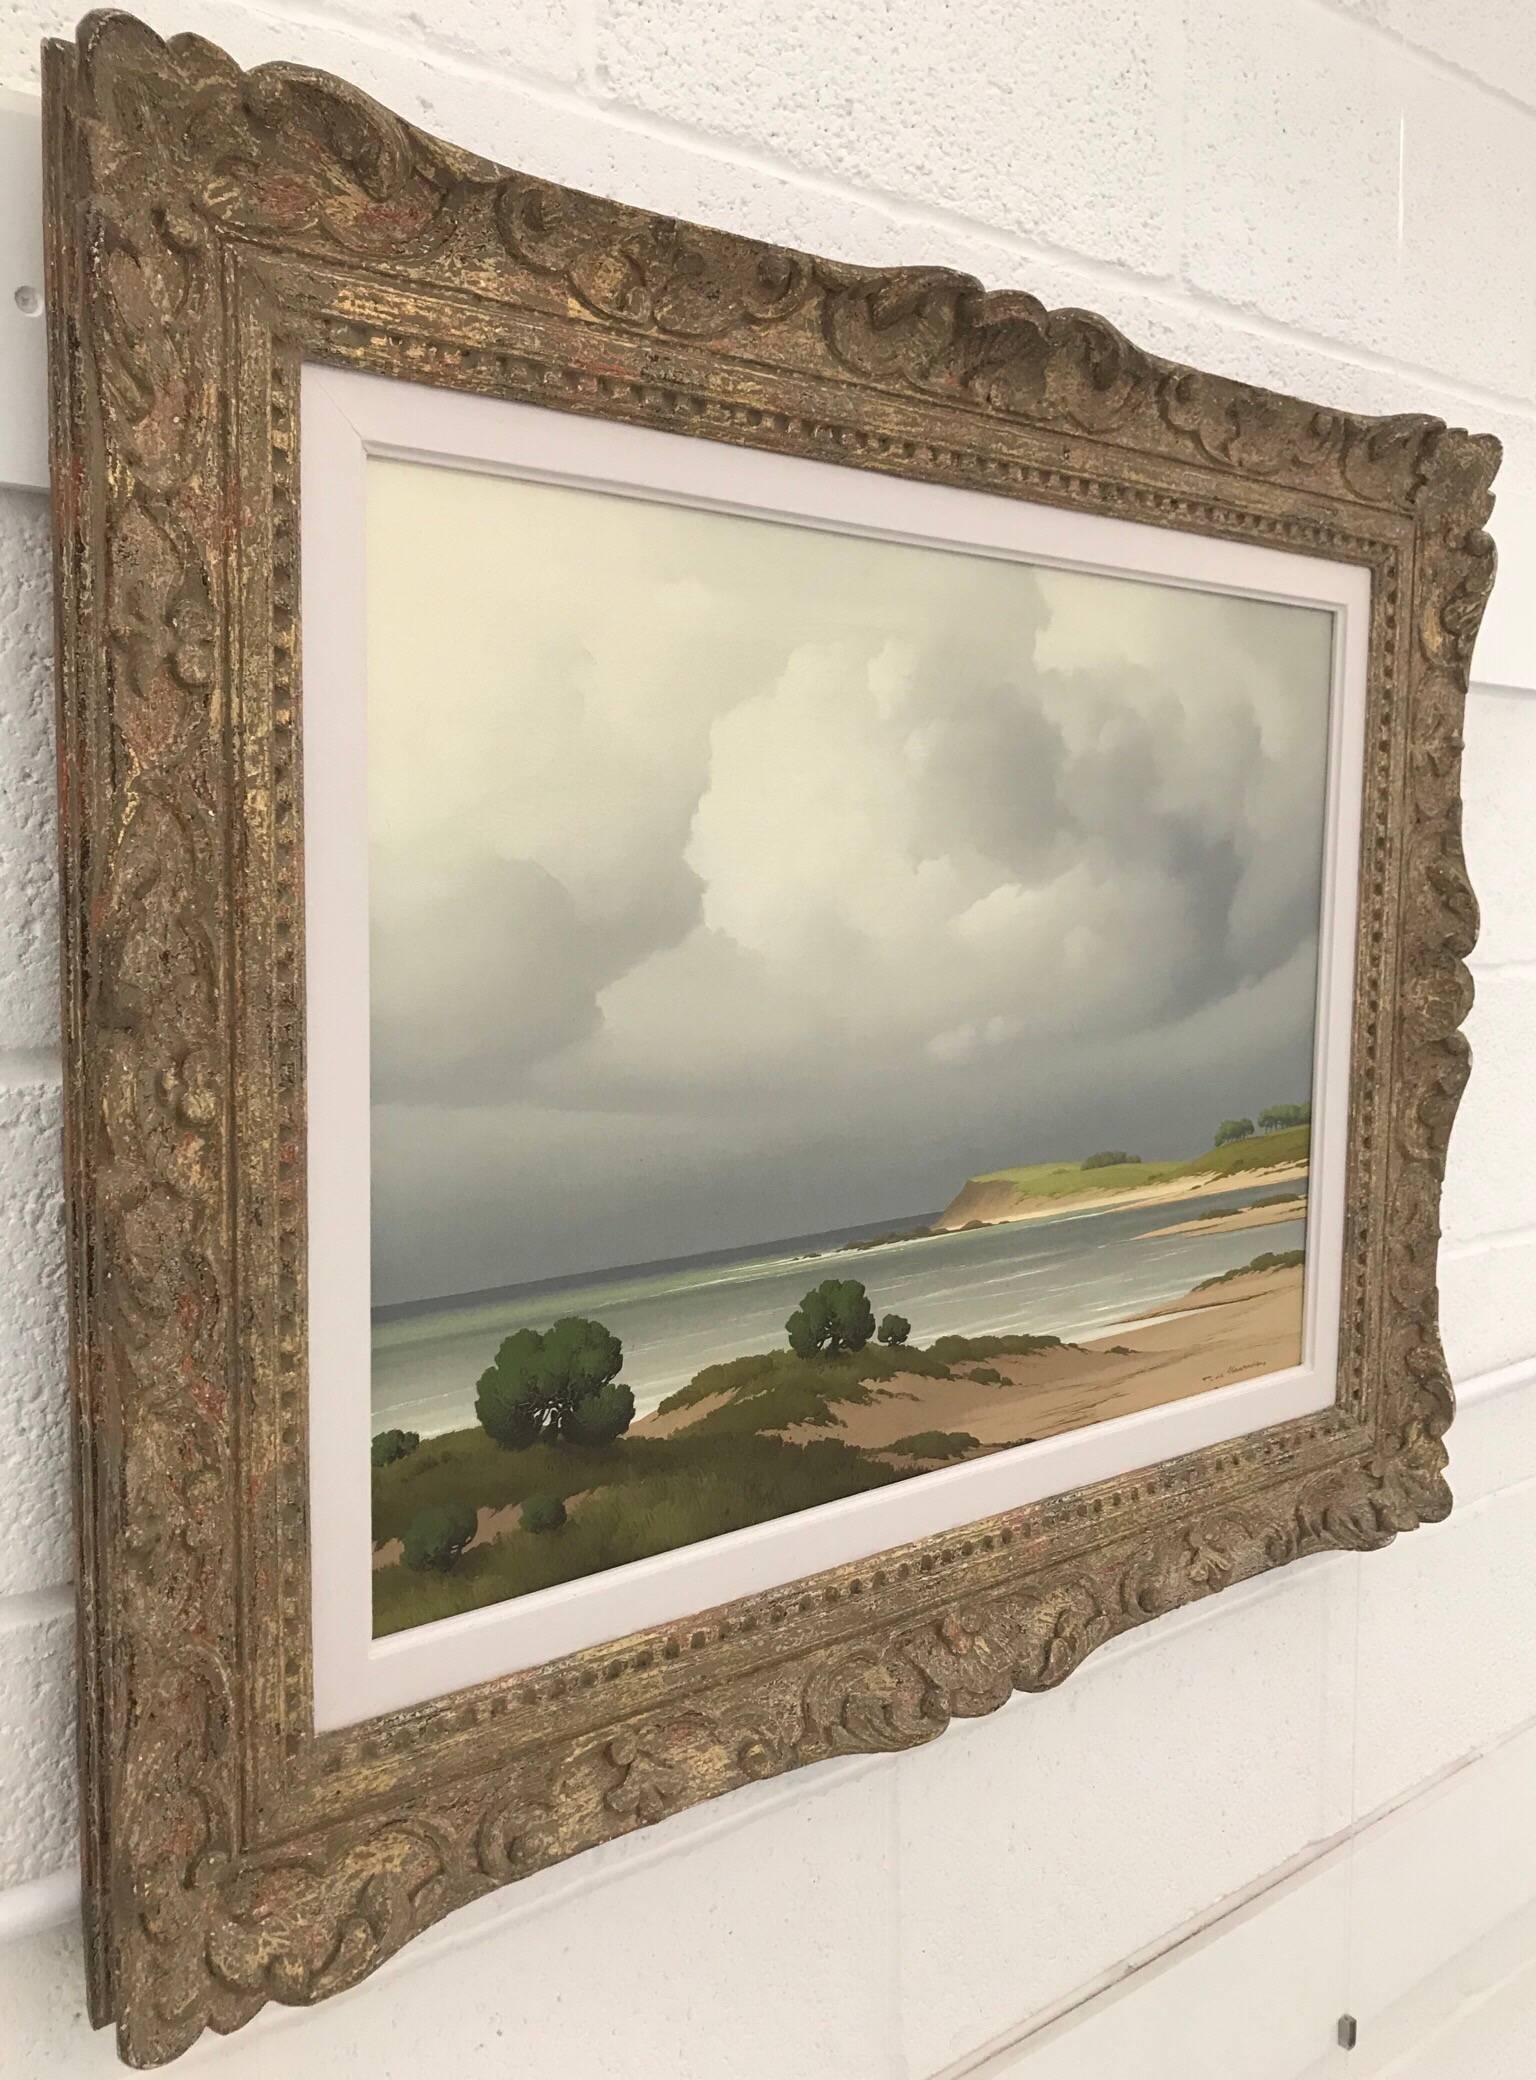 Sur le Cote Bretagne 20th Century Post-War French Landscape Seascape Painting - Gray Landscape Painting by Pierre de Clausade